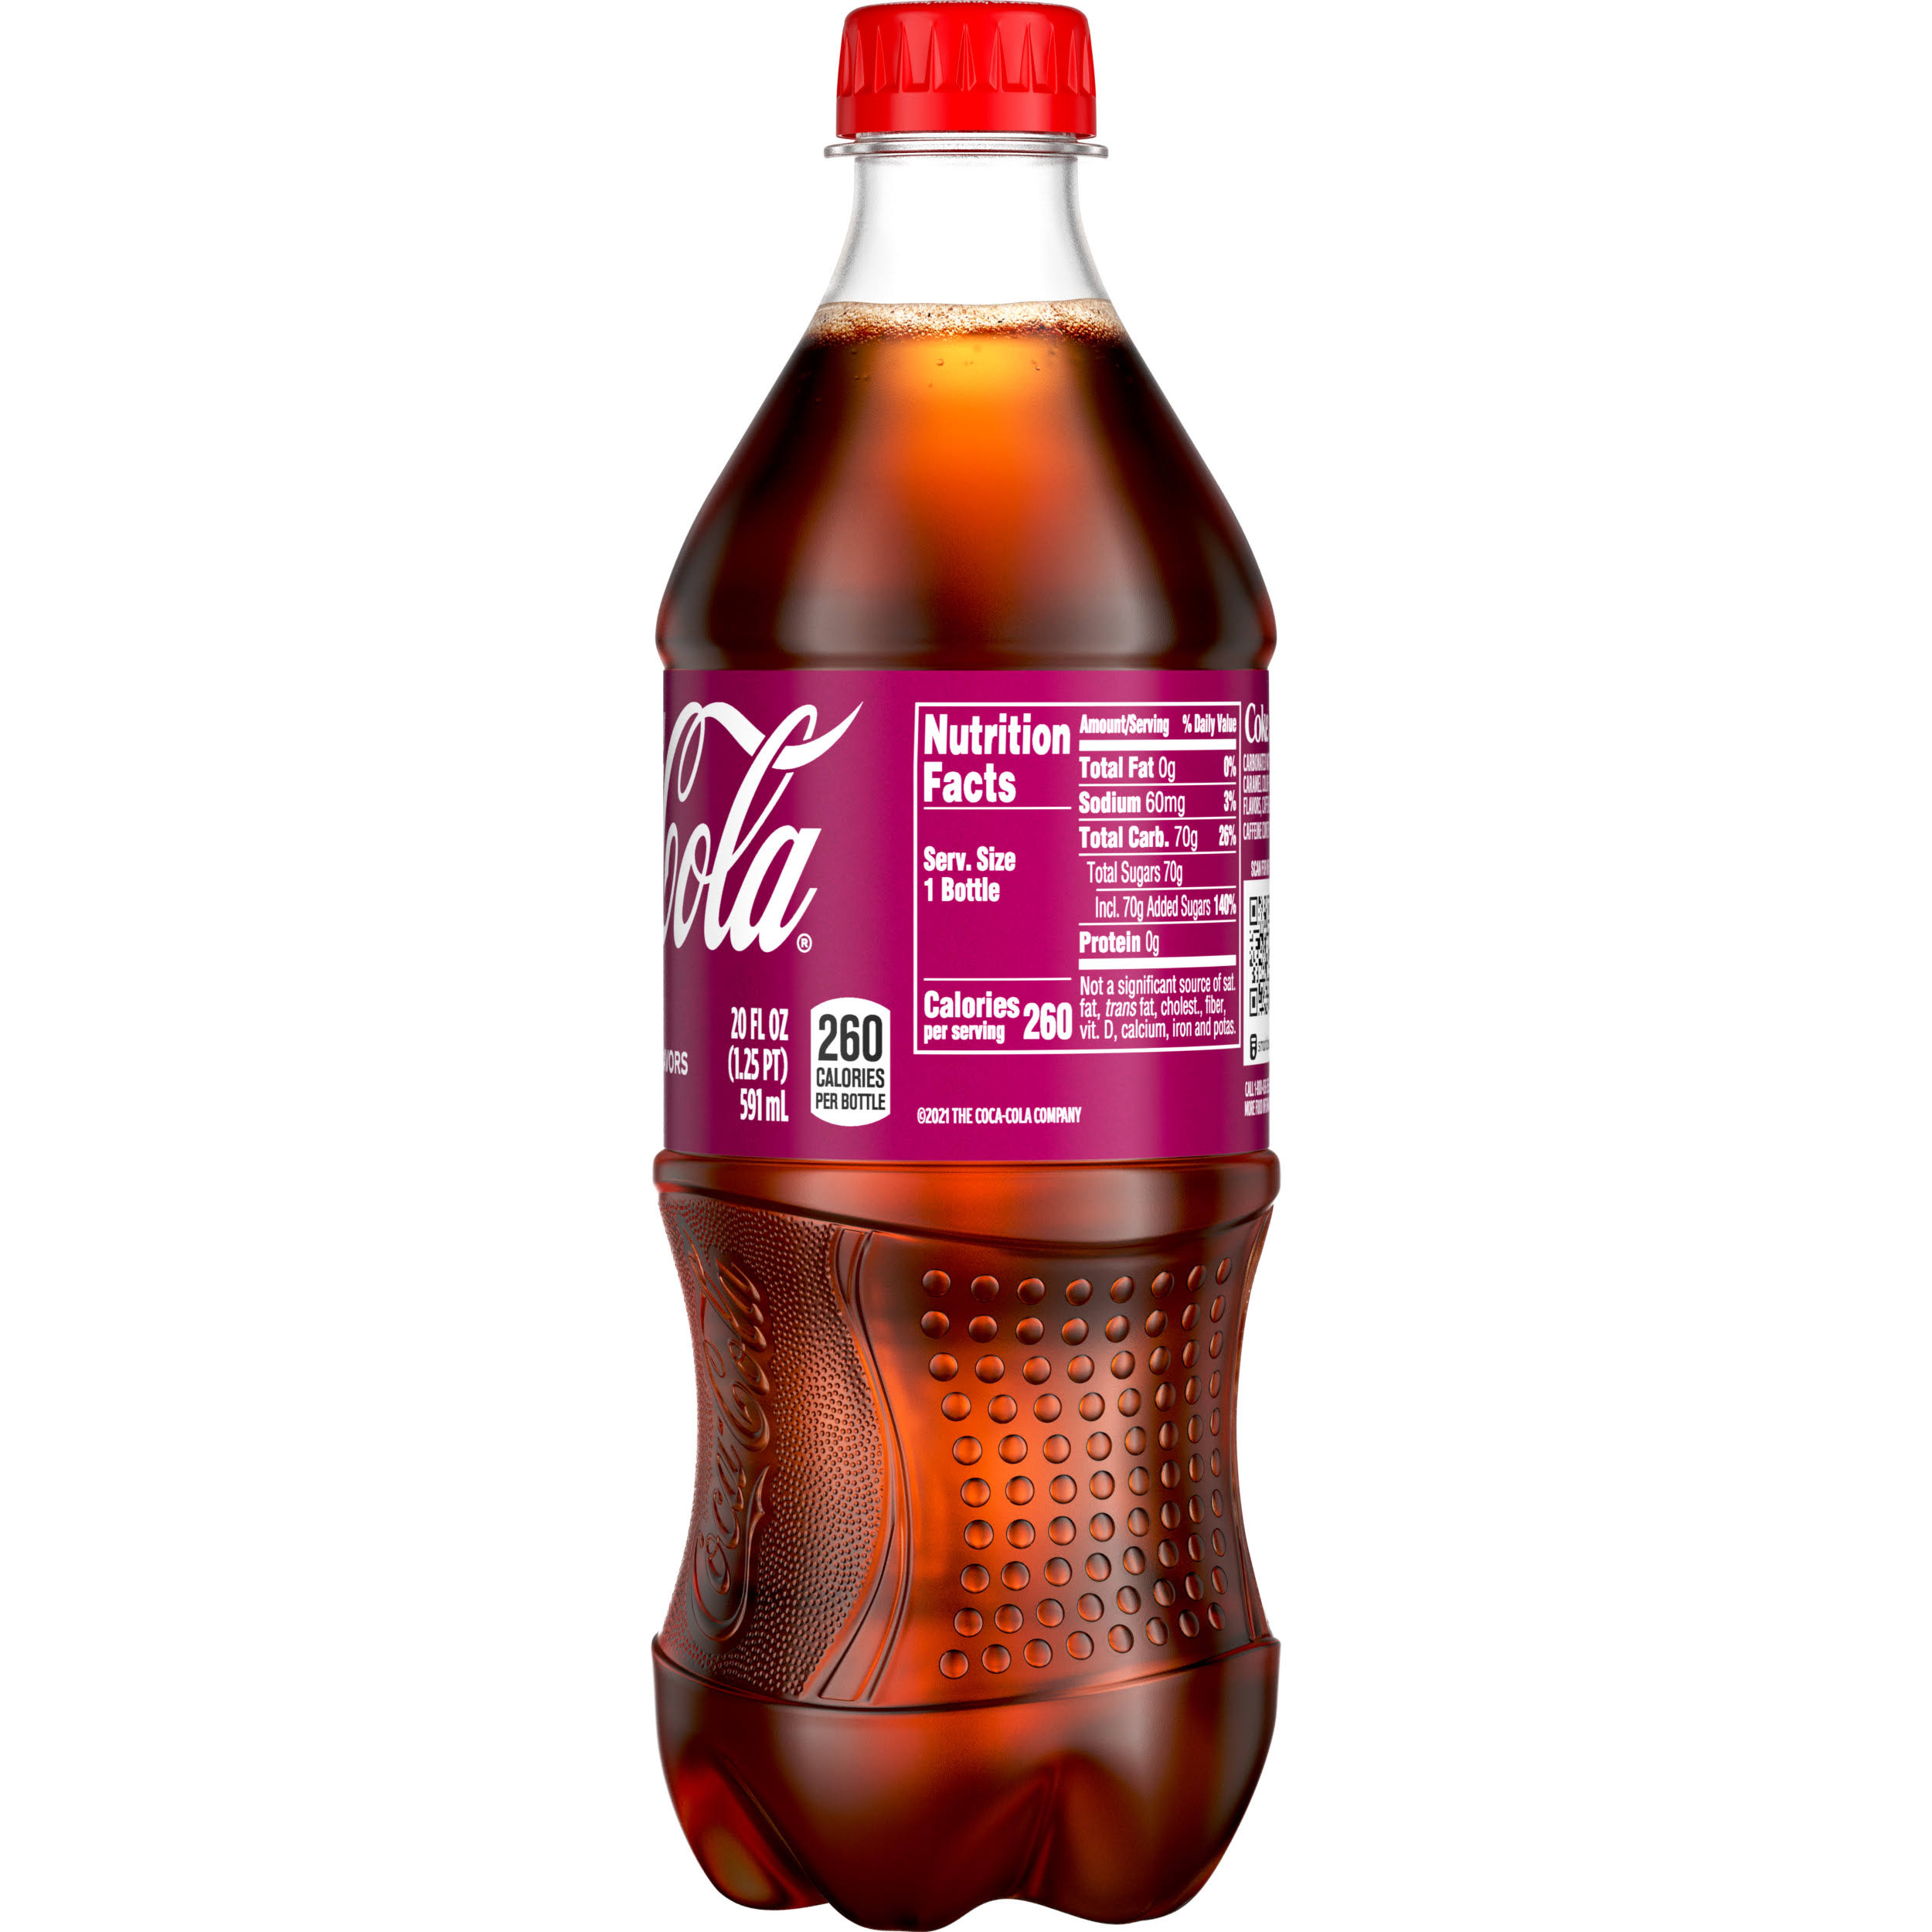 Coca-Cola Cherry Coke